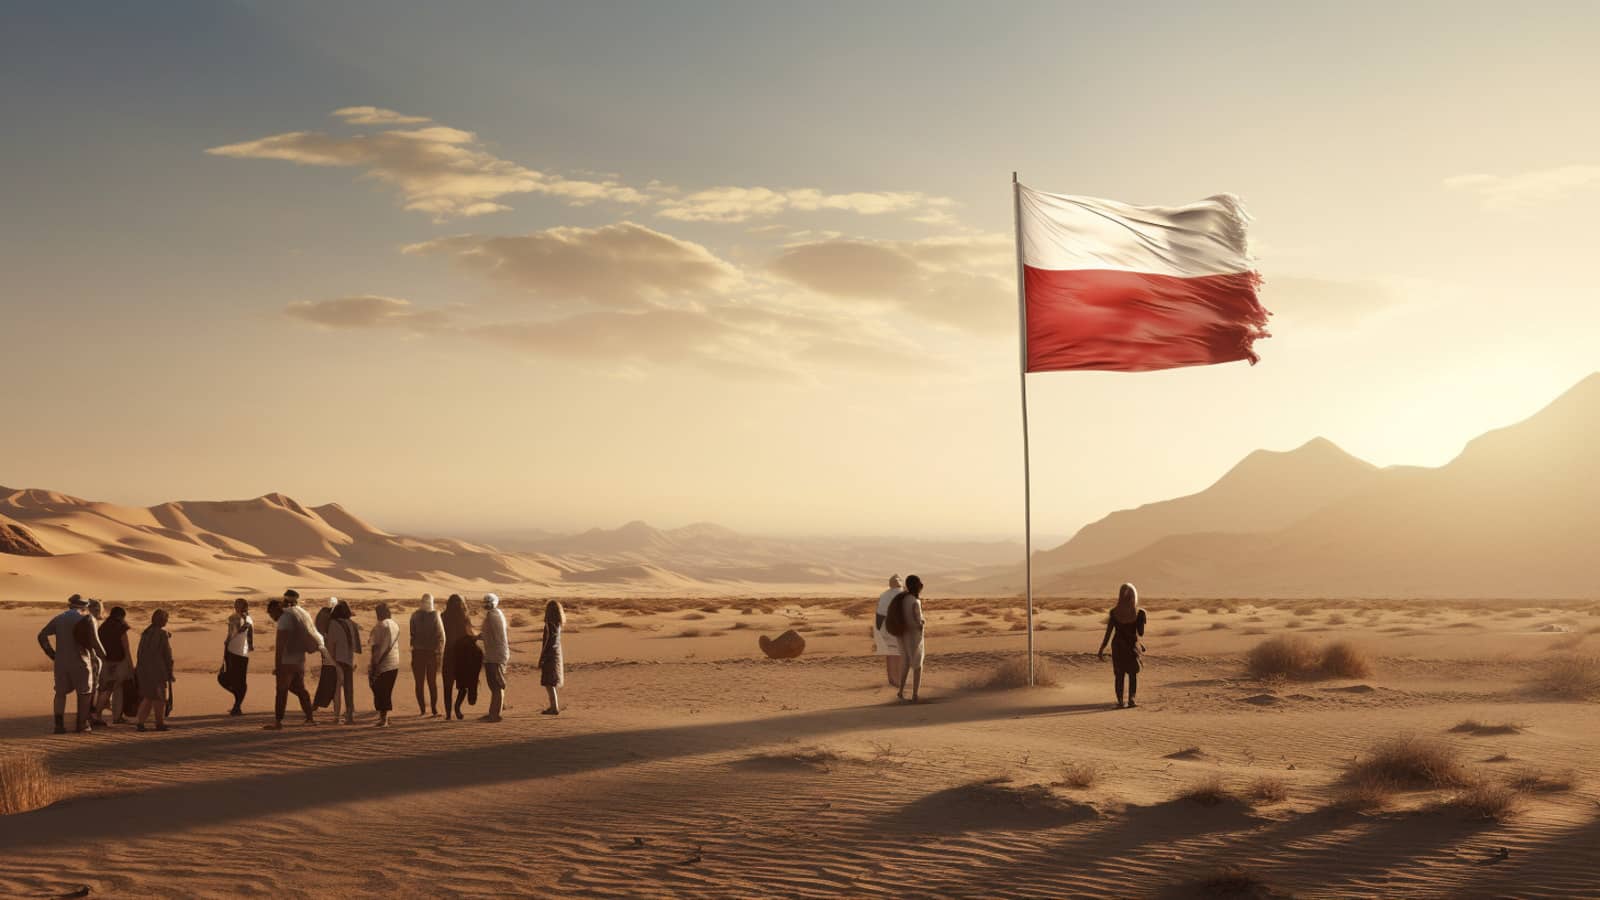 ludzie stojący na afrykańskiej pustyni, a obok flaga Polski